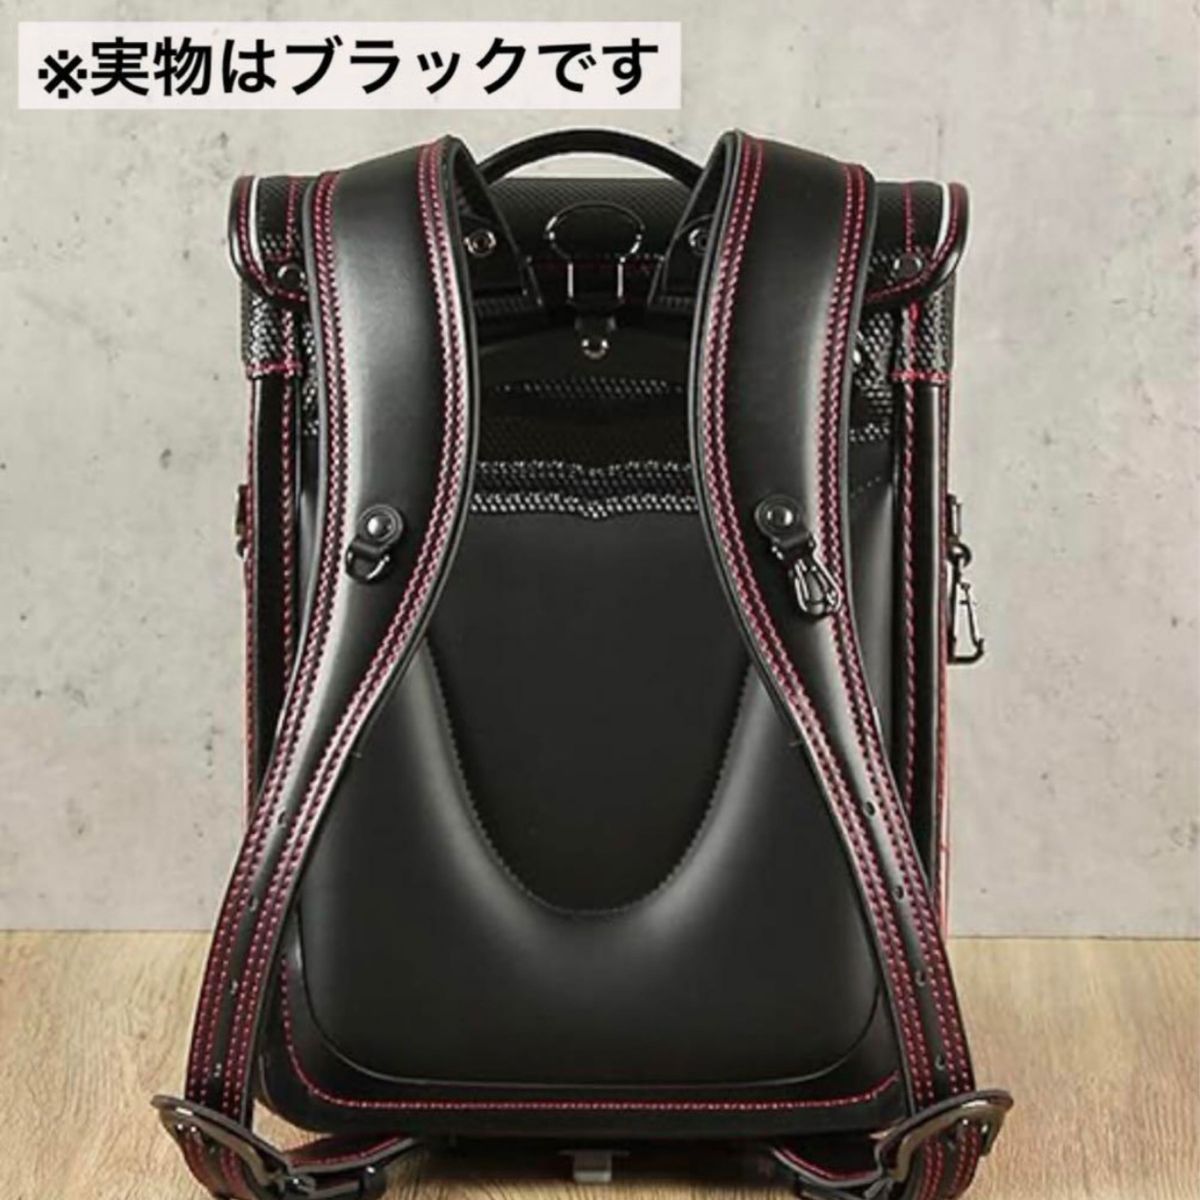 【新品未使用】ランドセル 黒 キューブ型 反射材付き ワンタッチロック A4 男の子 女の子 小学生 鞄